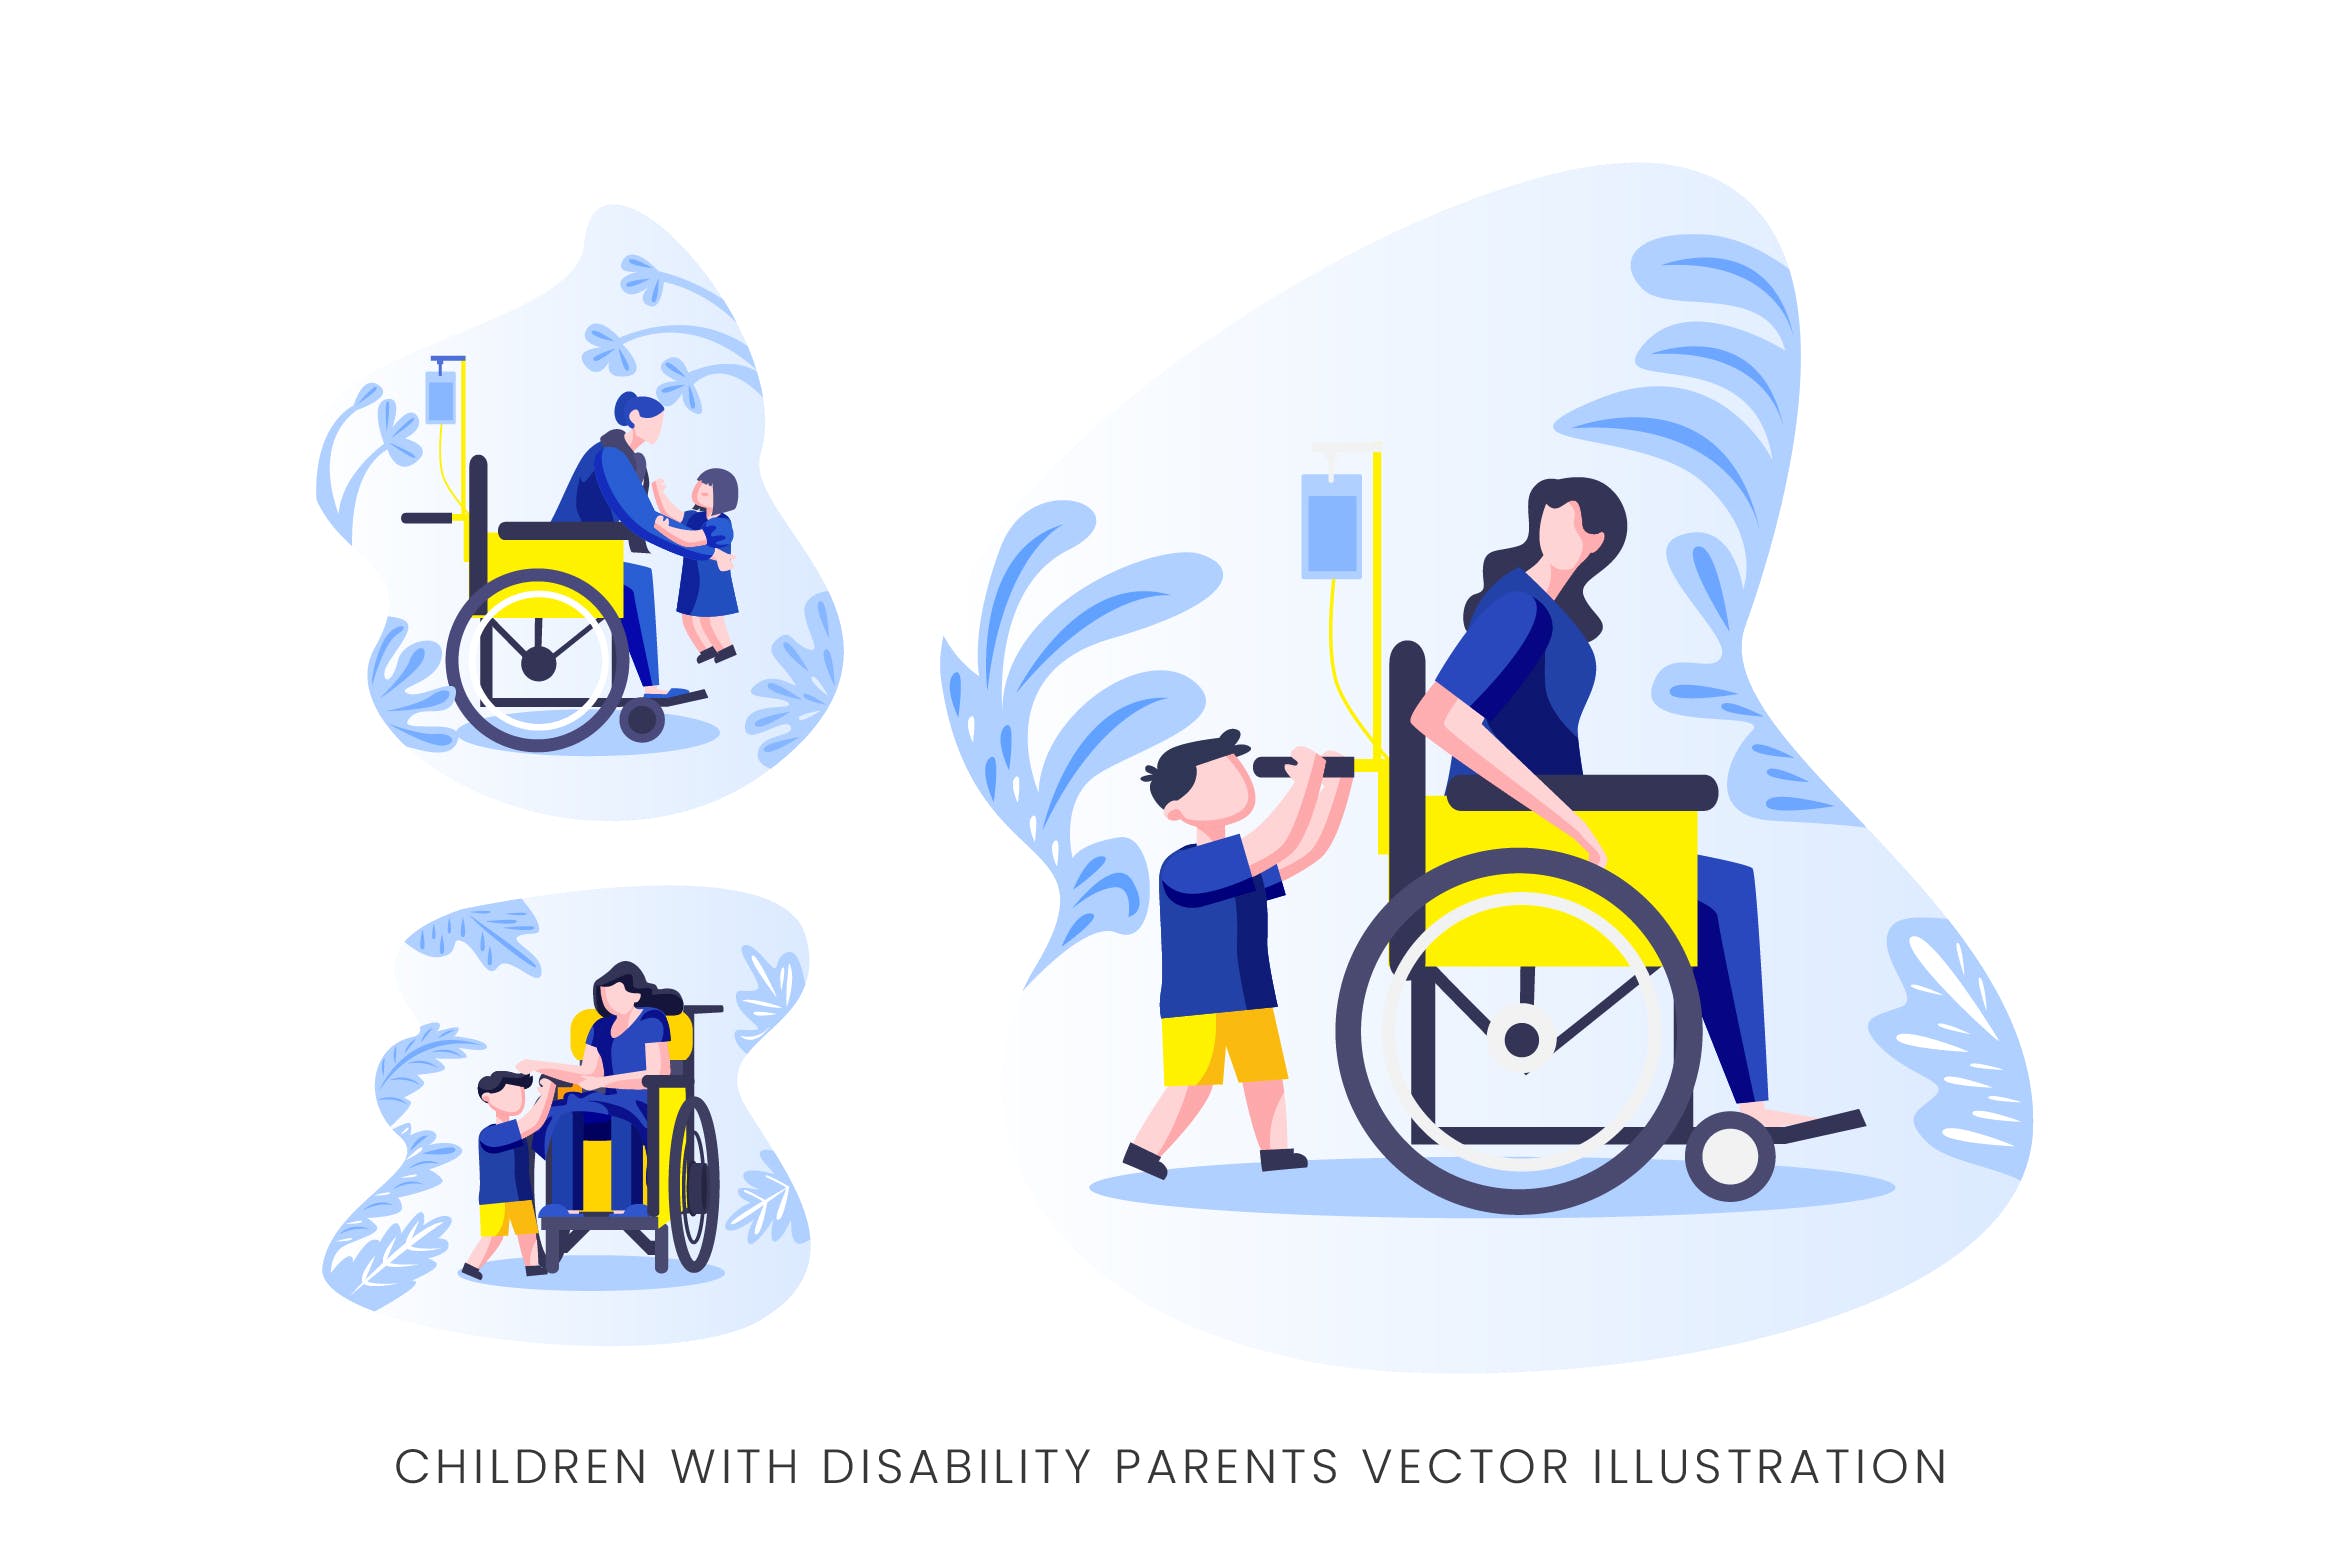 伤残人士与儿童人物形象蚂蚁素材精选手绘插画矢量素材 Children With Disability Parents Vector Character插图